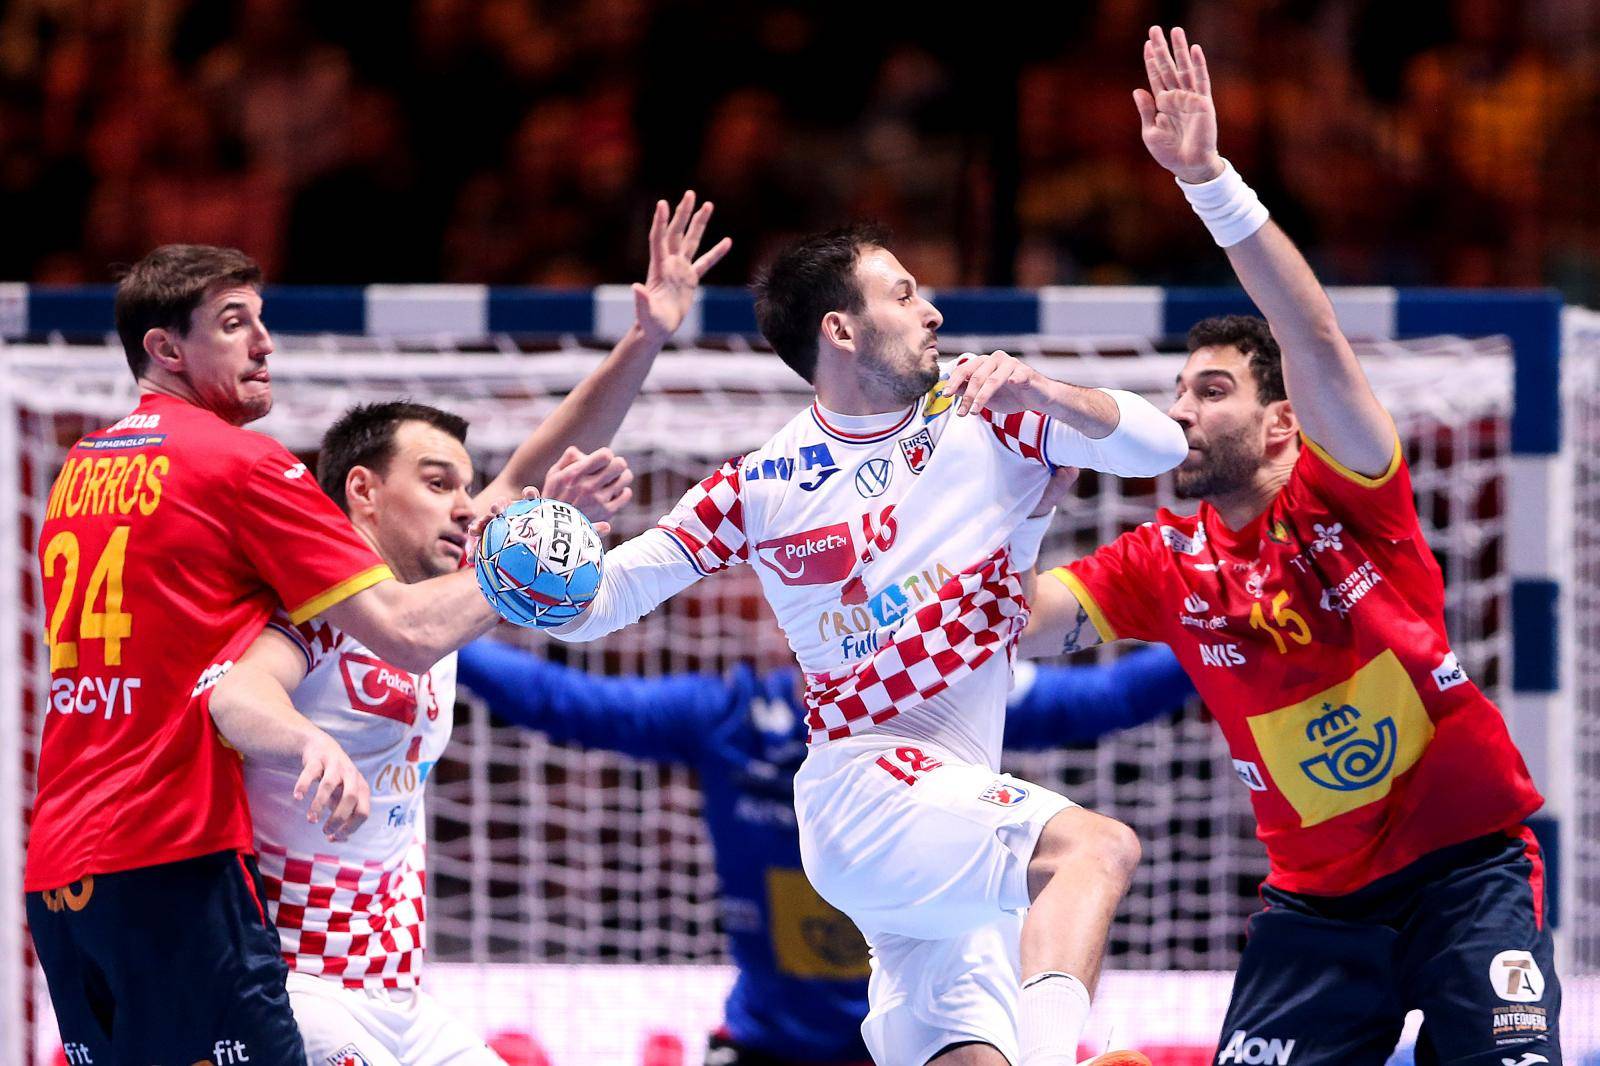 Stockholm: Hrvatska i Španjolska u utakmici finala Europskog prvenstva u rukometu